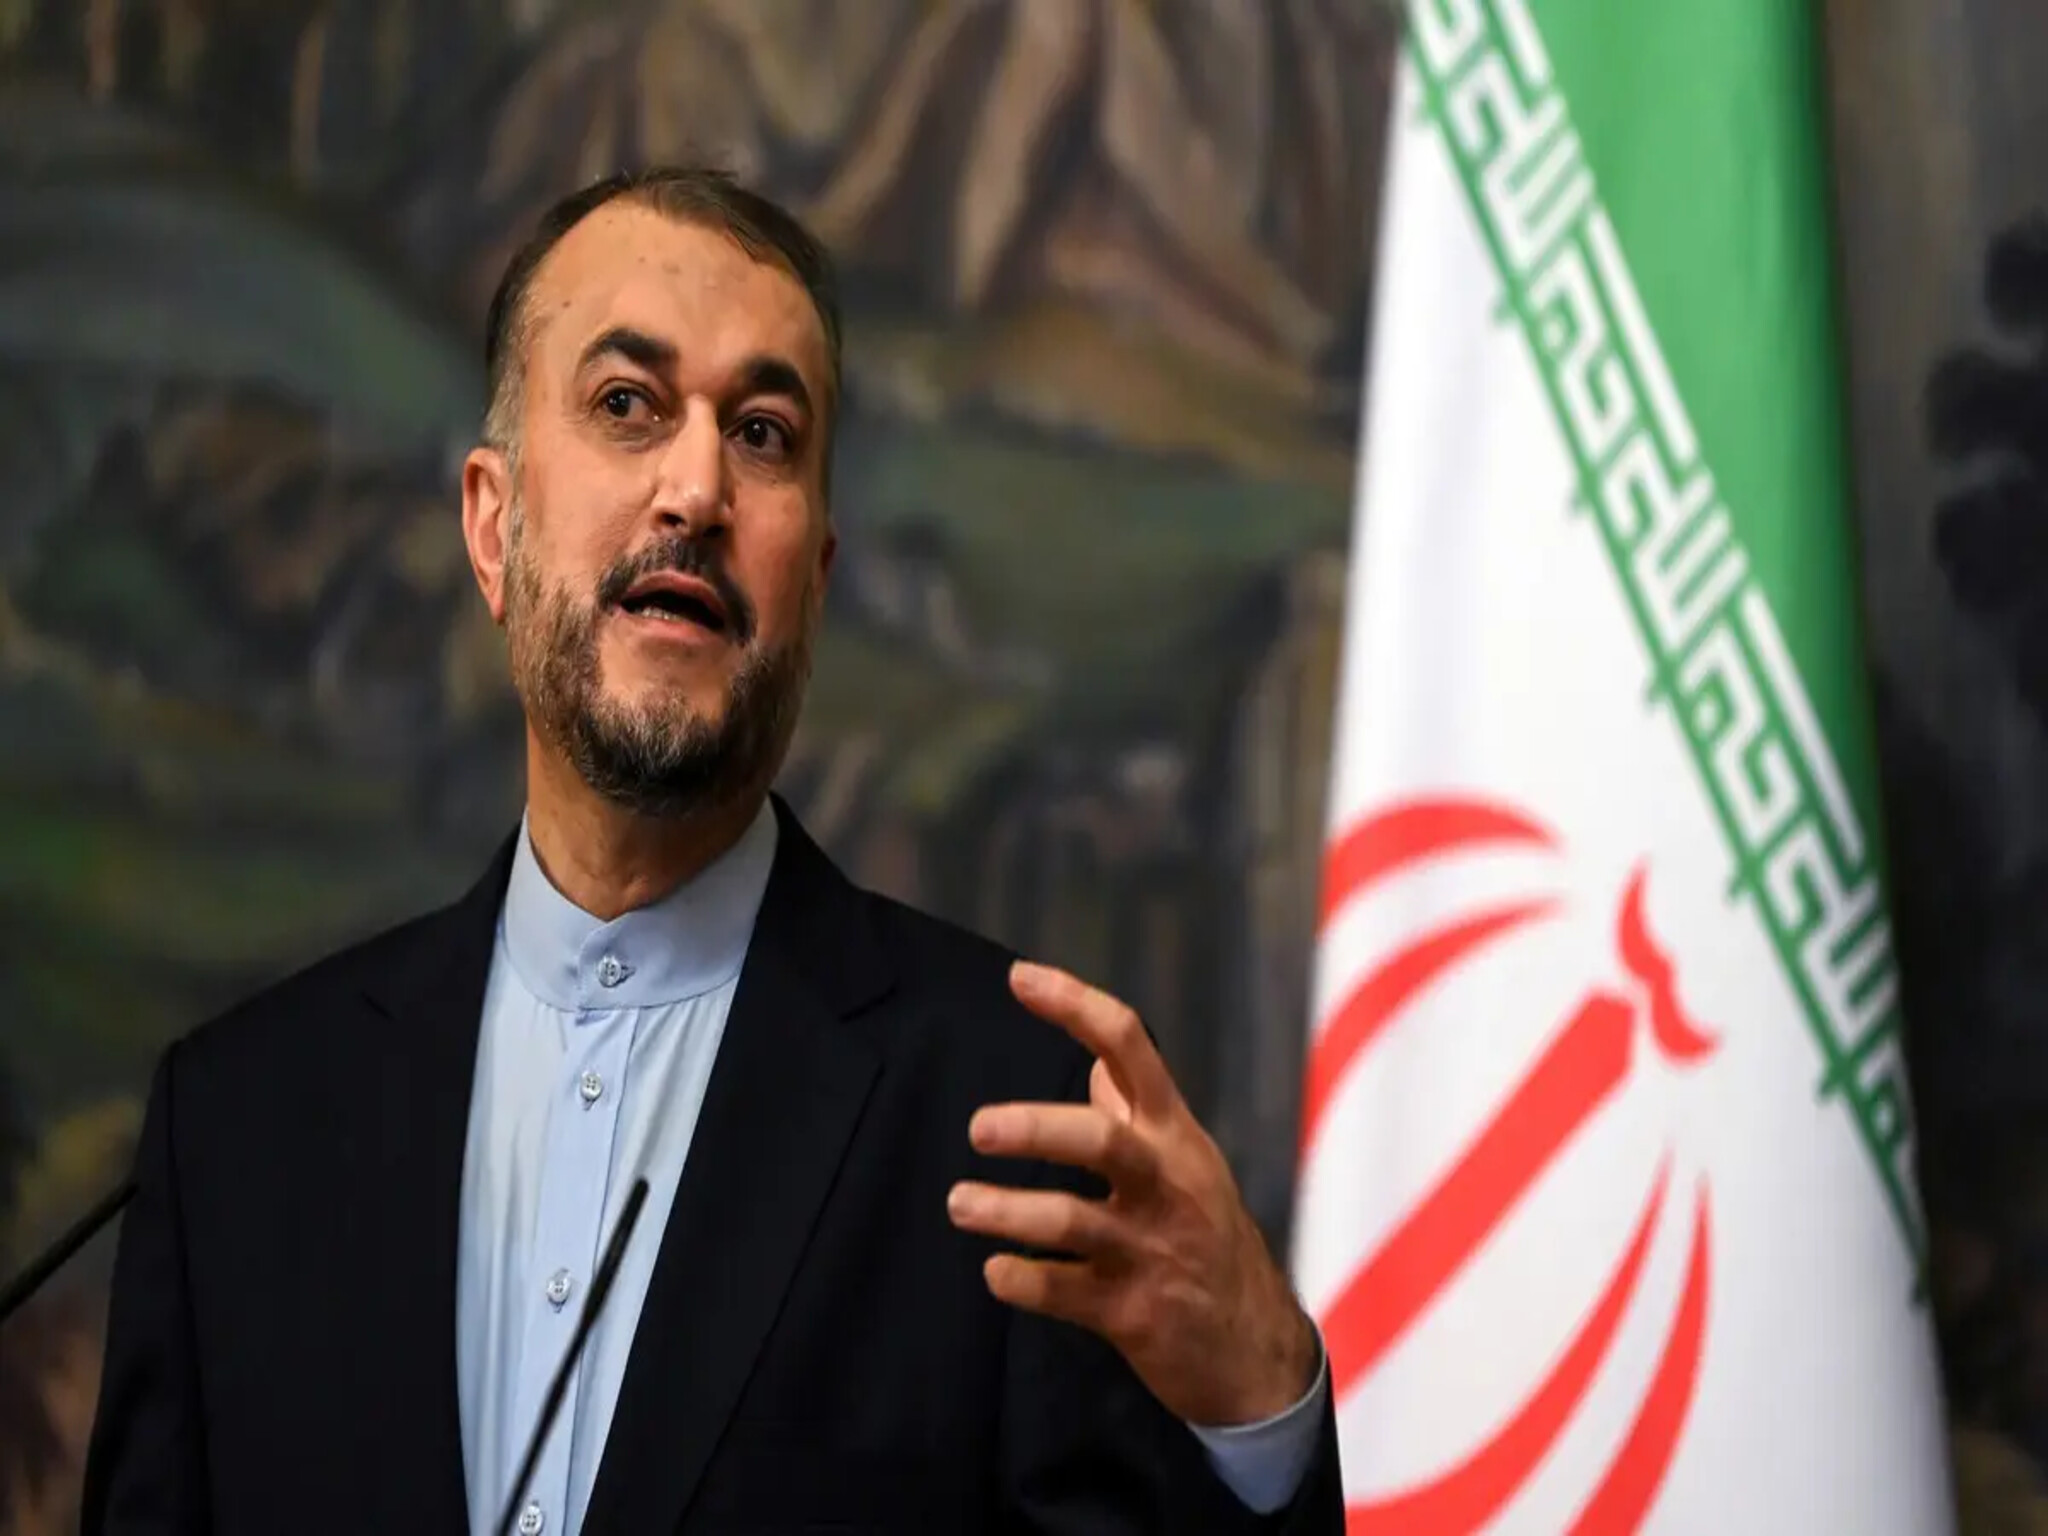 وزير خارجية إيران يهدد..كل الاحتمالات واردة إذا لم تتوقف إسرائيل